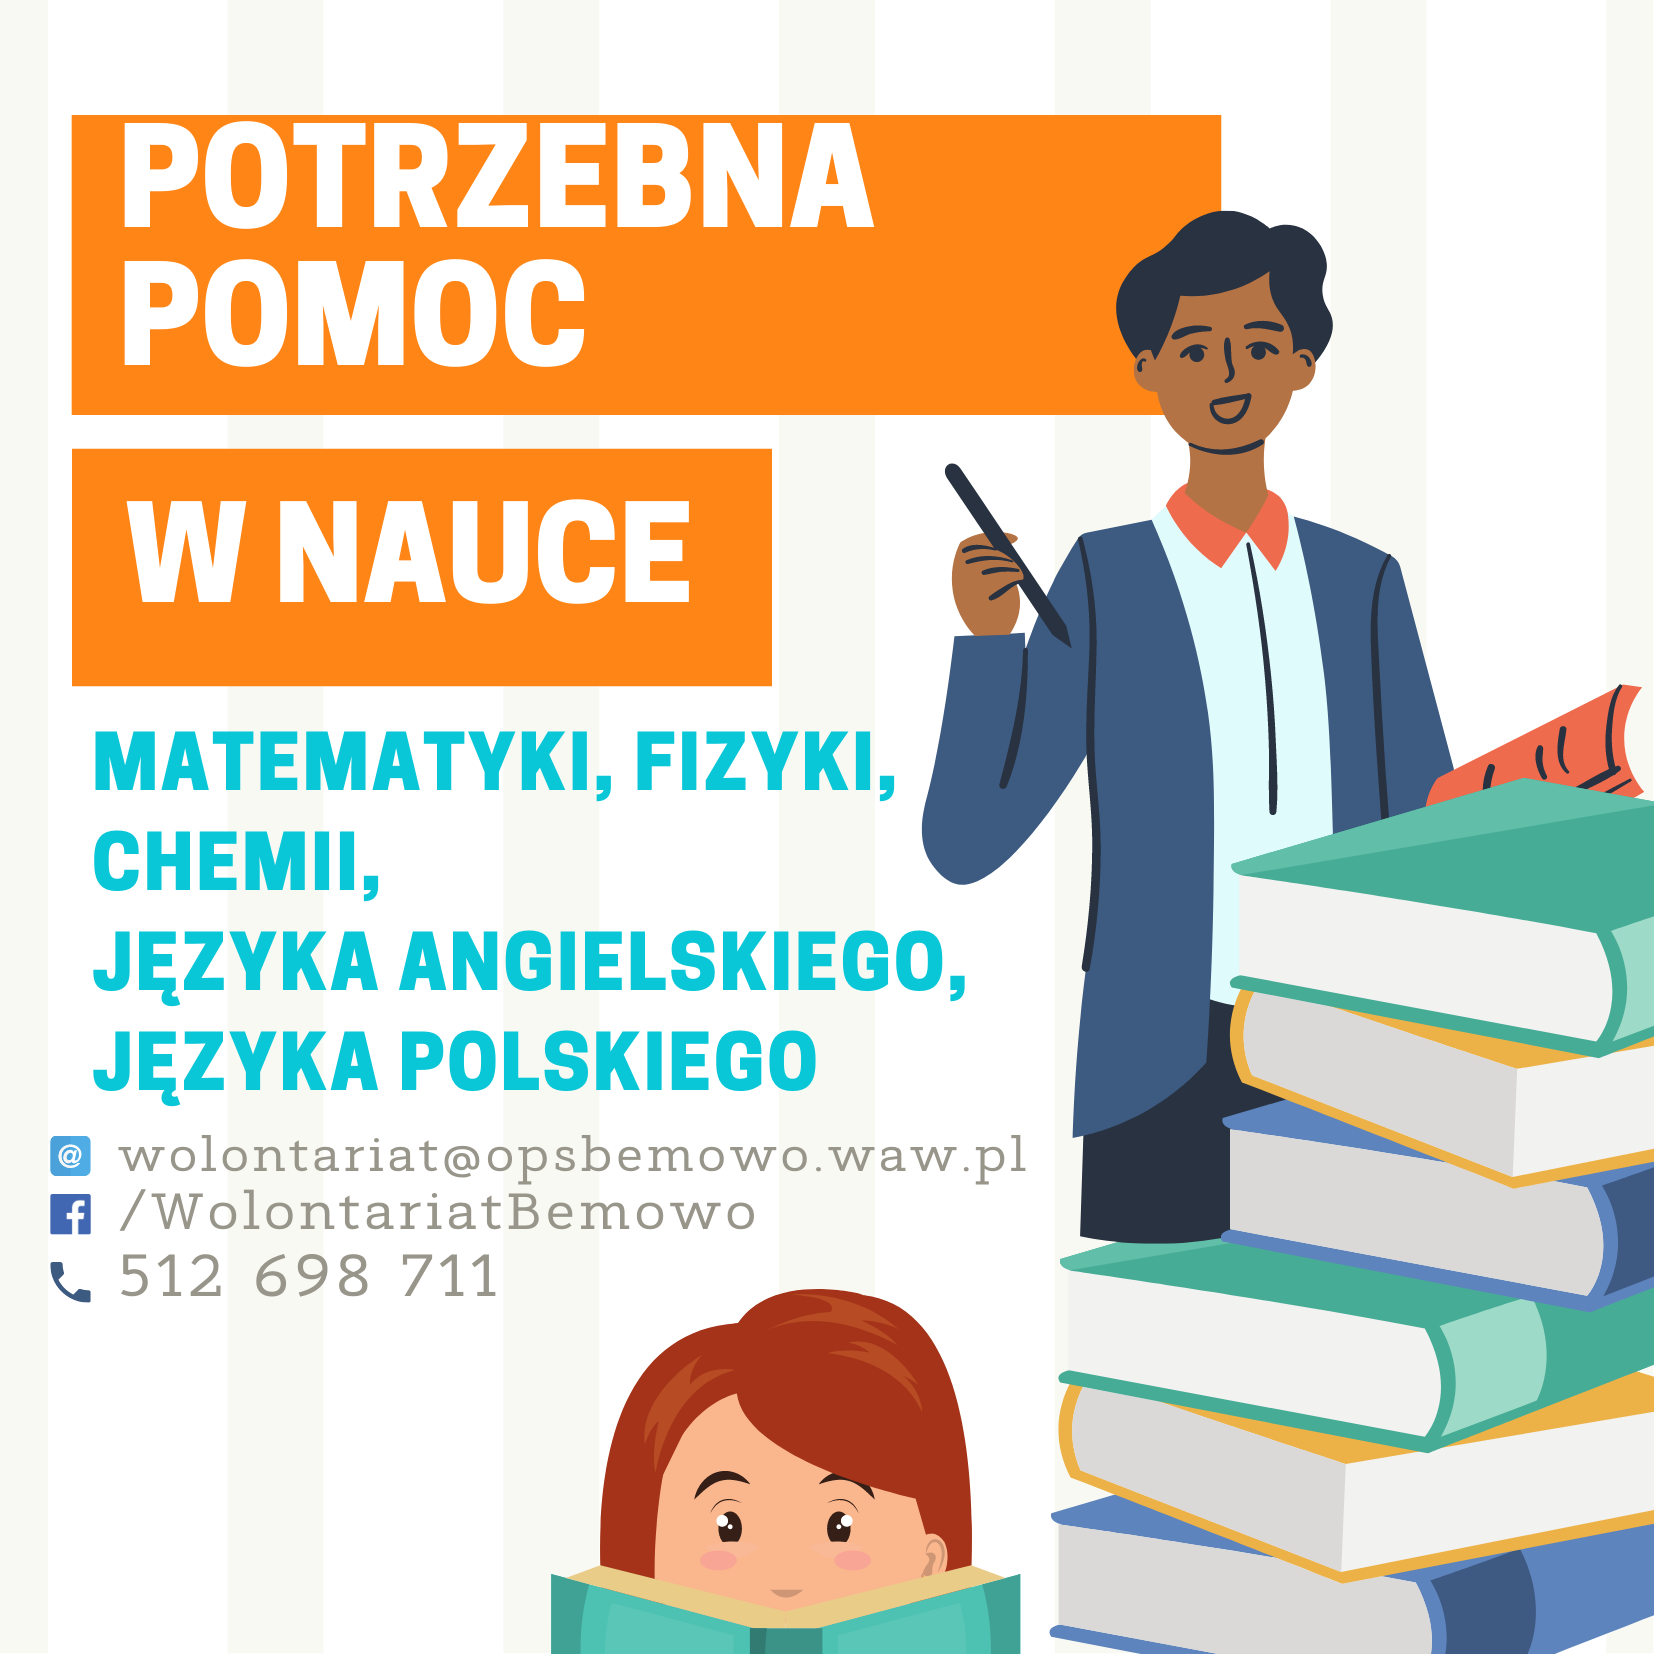 Ogłoszenie dla kandydatów na wolontariuszy. Wolontariat dotyczy pomocy dzieciom i młodzieży w nauce. – odnośnik do strony ochotnicy.waw.pl